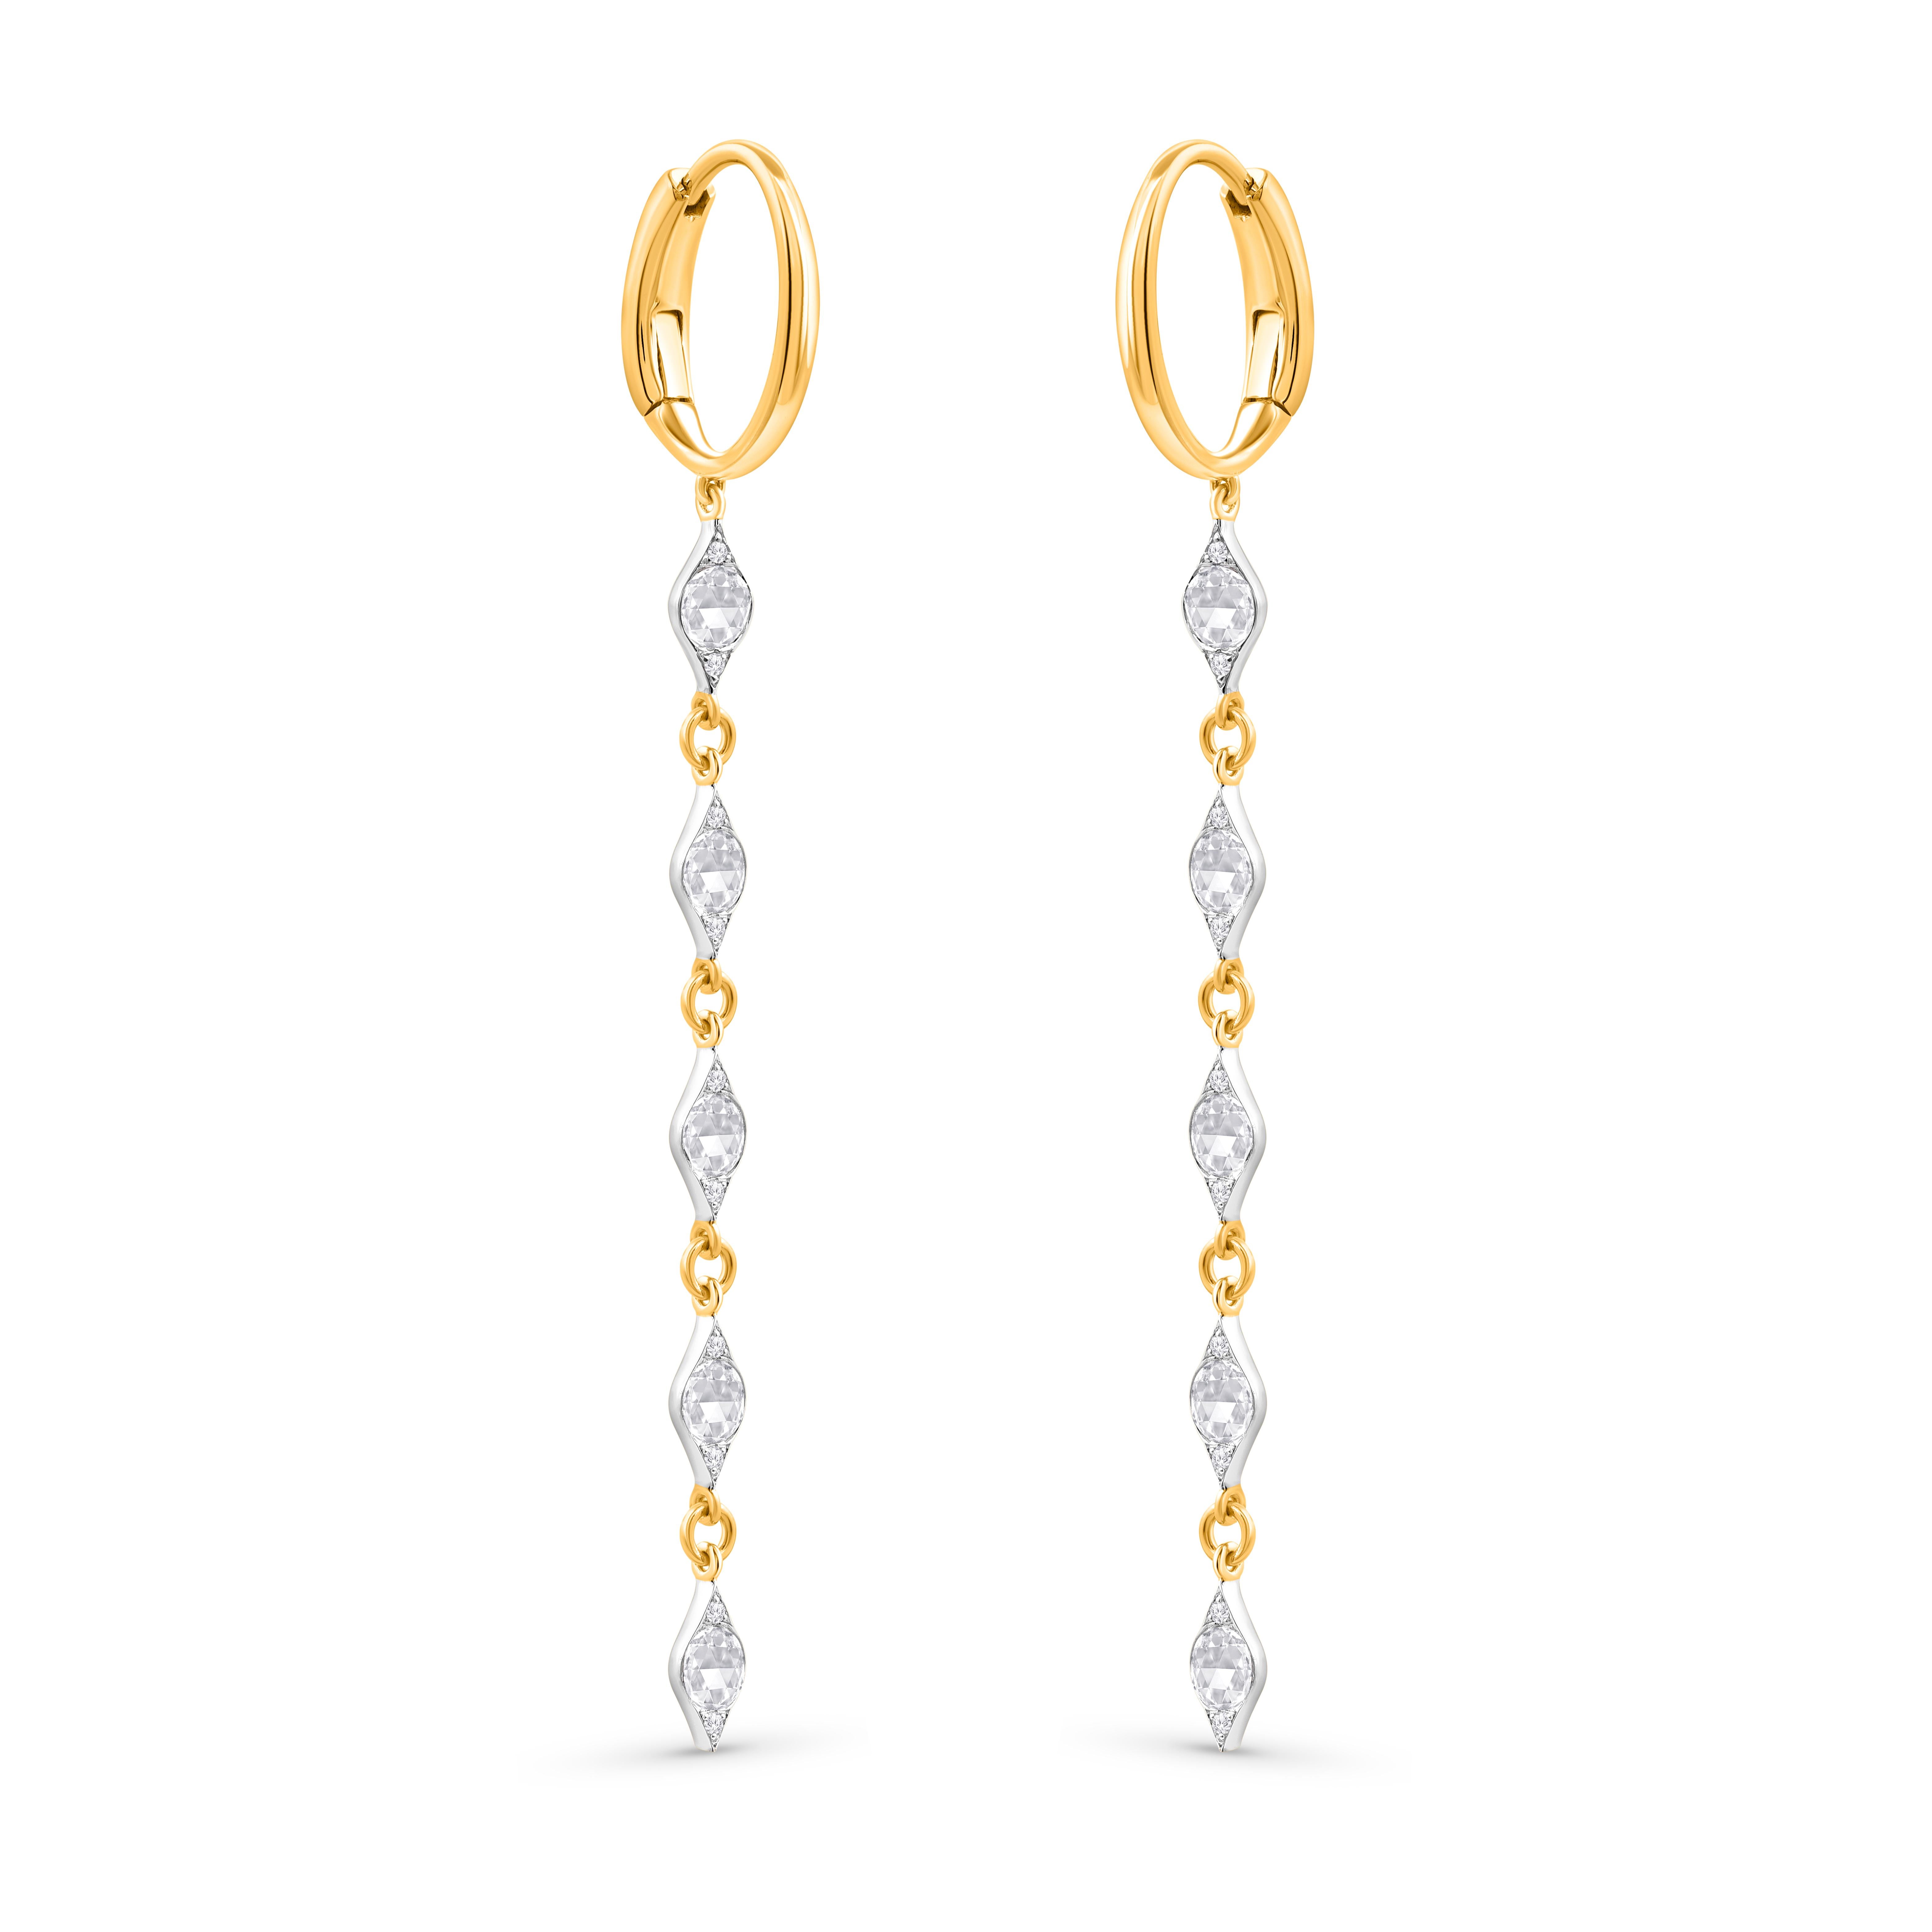 Inspiriert von den heiligen Symbolen, die die Göttlichkeit beschwören, sind diese elegant gestalteten Ohrringe mit 0,76 Karat Naturstein besetzt.  Diamanten in Zackenfassung, wunderschön gearbeitet in 18 KT Weiß- und Gelbgold. Unsere Diamanten sind